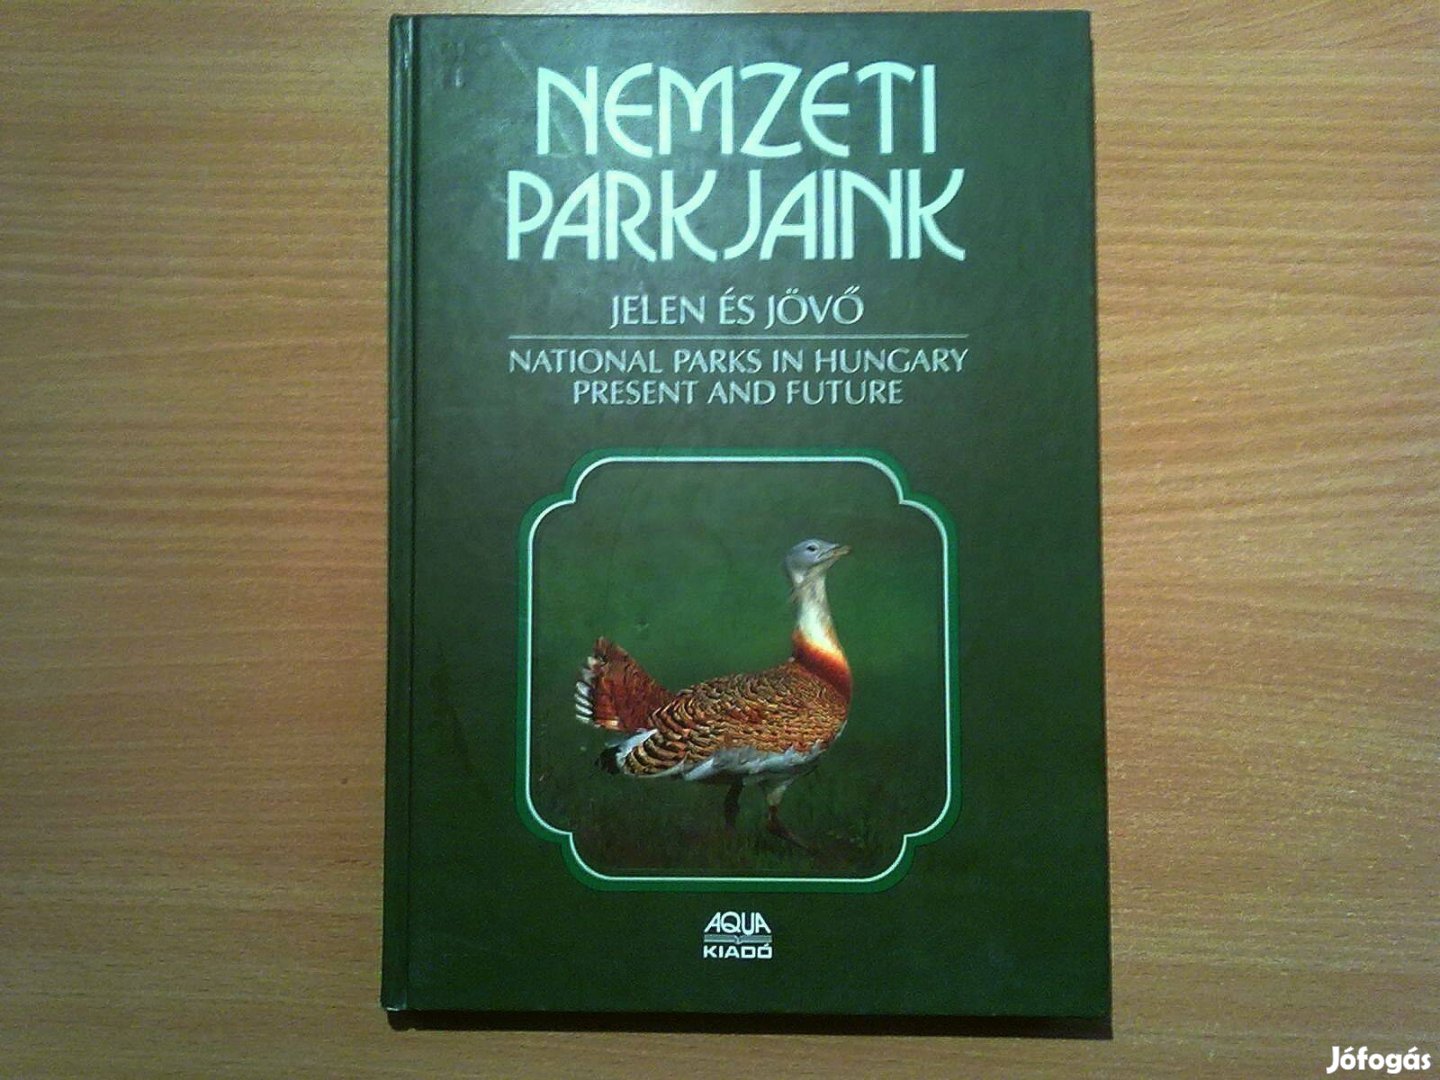 Nemzeti parkjaink - Jelen és jövő (Magyar és angol nyelven)